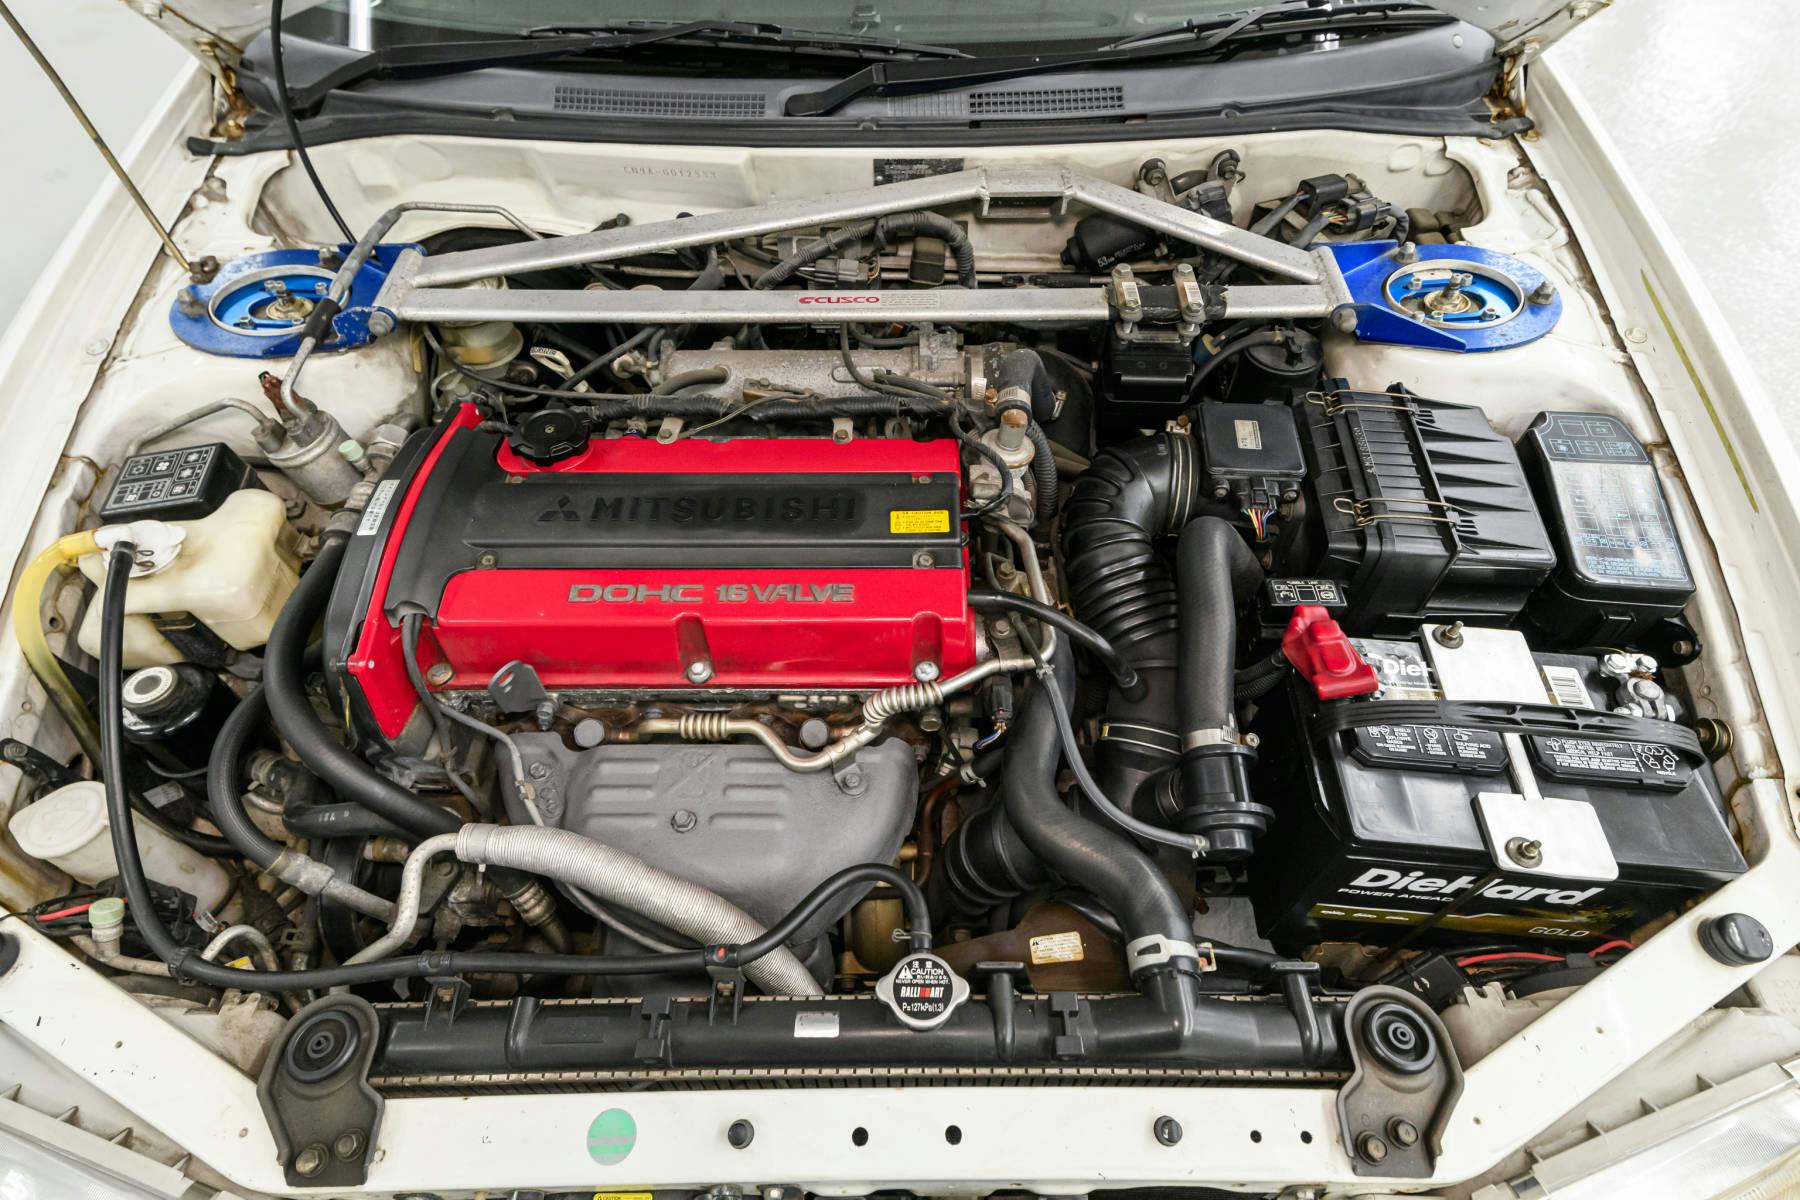 1997 Mitsubishi Lancer Evolution IV GSR engine strut brace